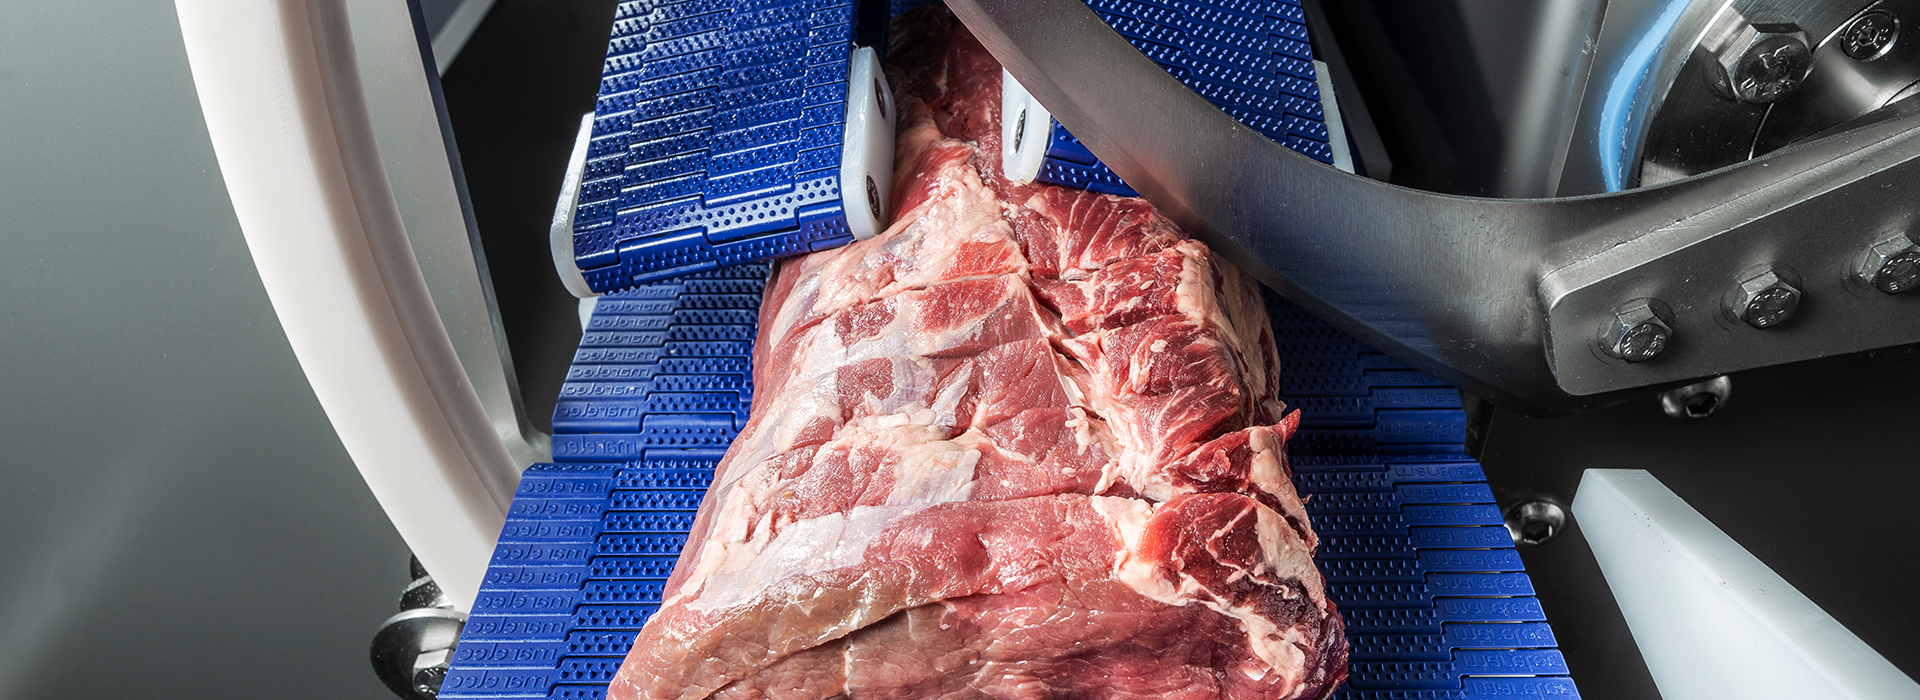 Машина порционной нарезки PORTIO 3D. Машина интеллектуальной нарезки красного мяса на порции с фиксированным весом. Отлично подходит для нарезки стейков, филейного края, рибая, вырезки, и т.п.